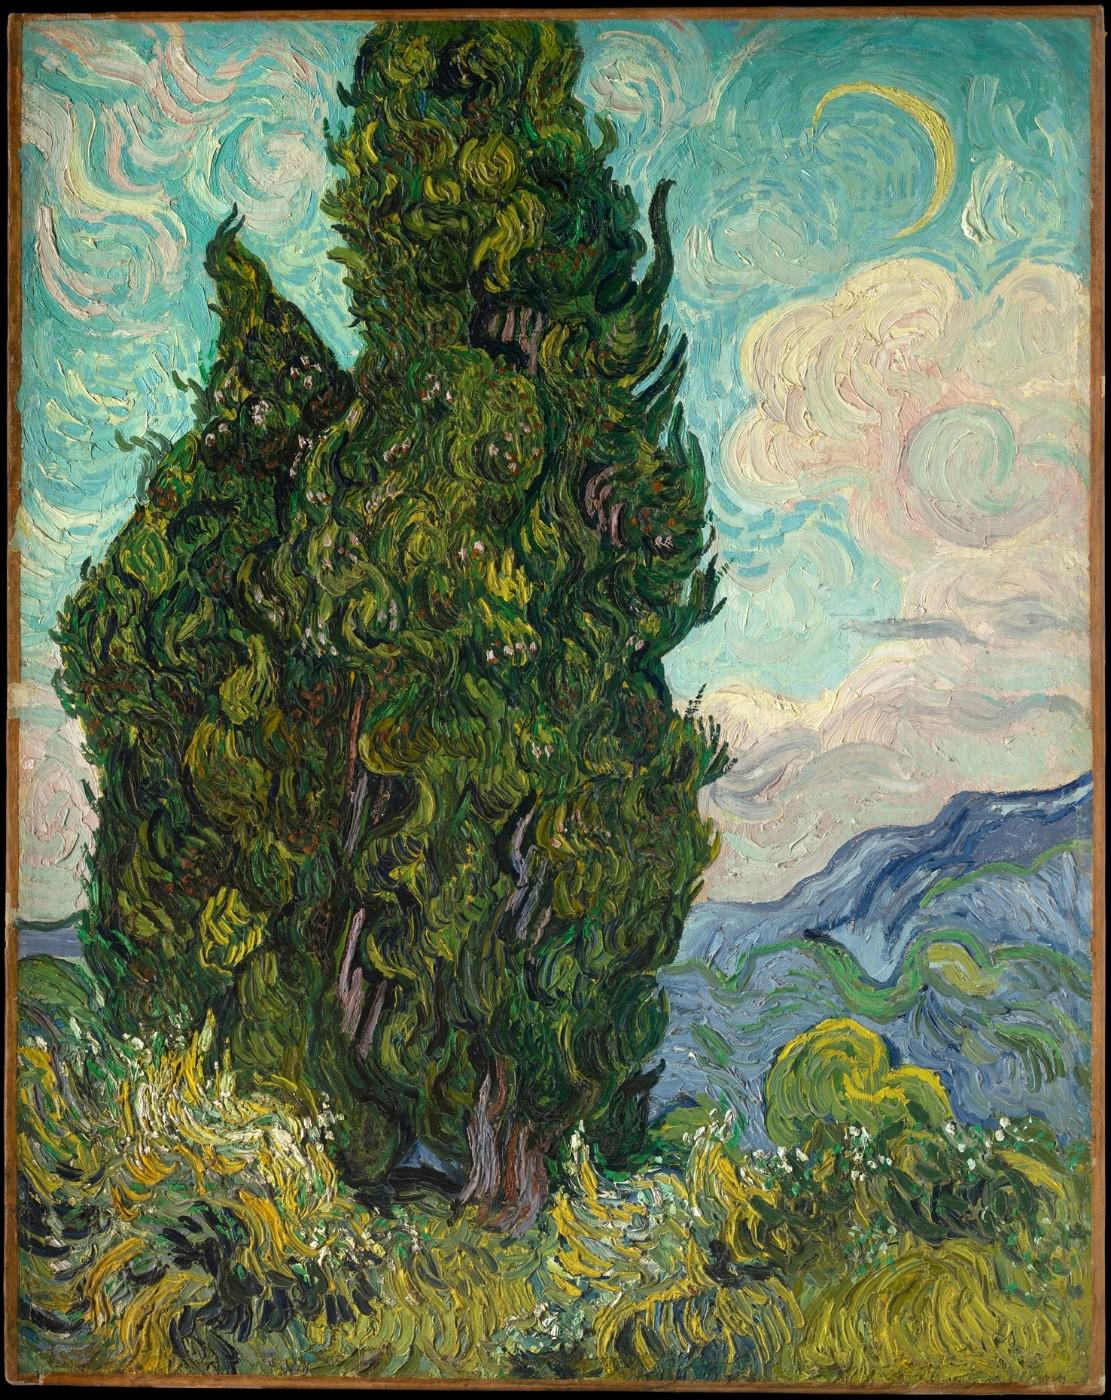 Vincent van Gogh, Cypresses, 1889